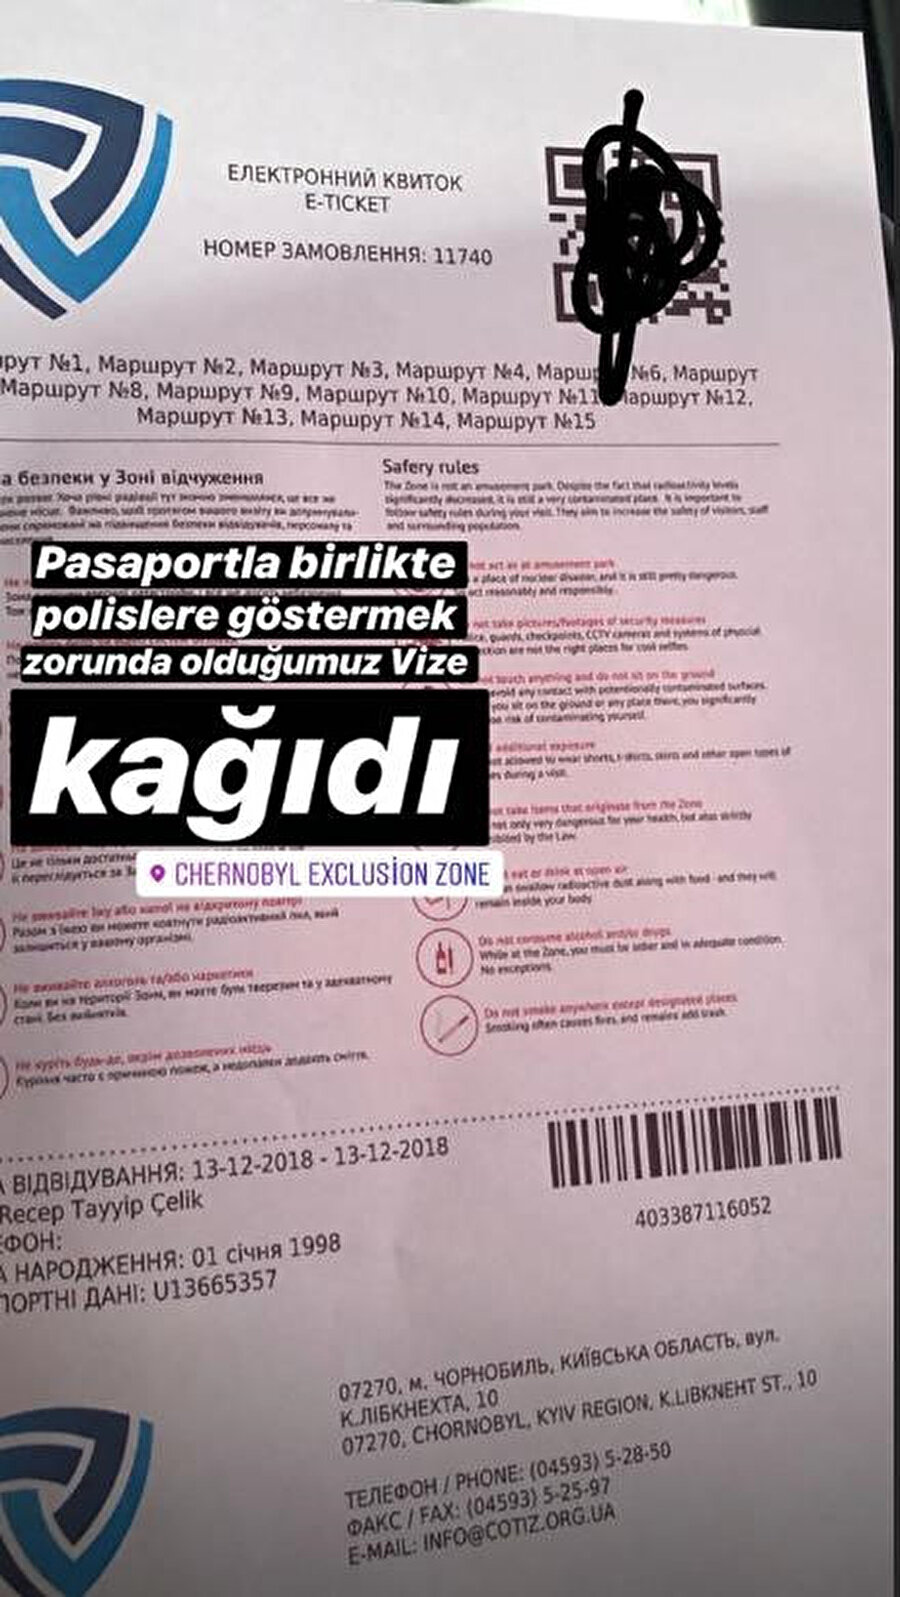 Çernobile girişte pasaportla birlikte polislere gösterilen vize kağıdının görseli